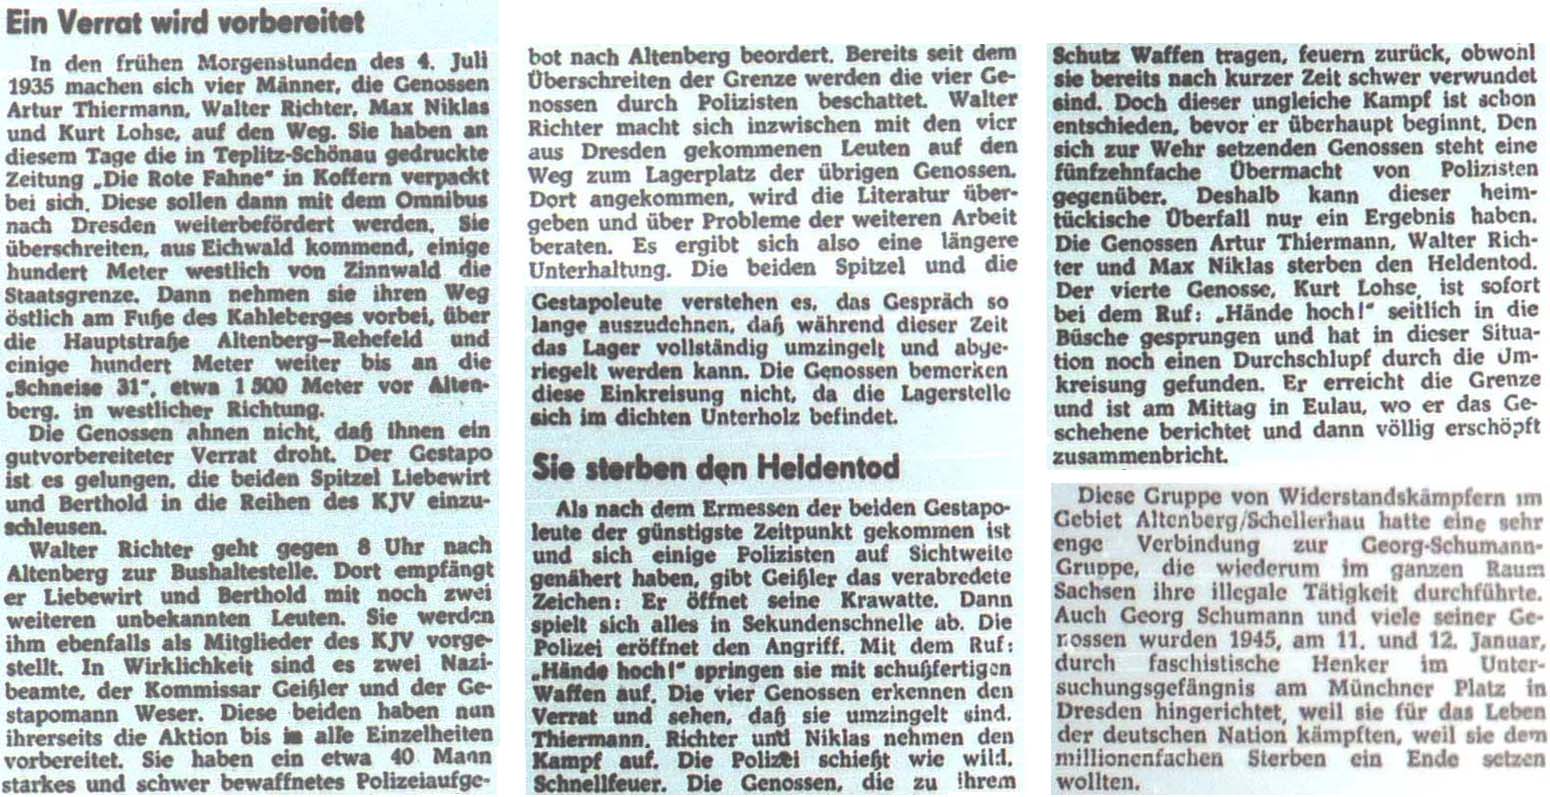 An der Schneise 31 in Altenberg sterben am 4. Juli 1935 drei Antifaschisten.